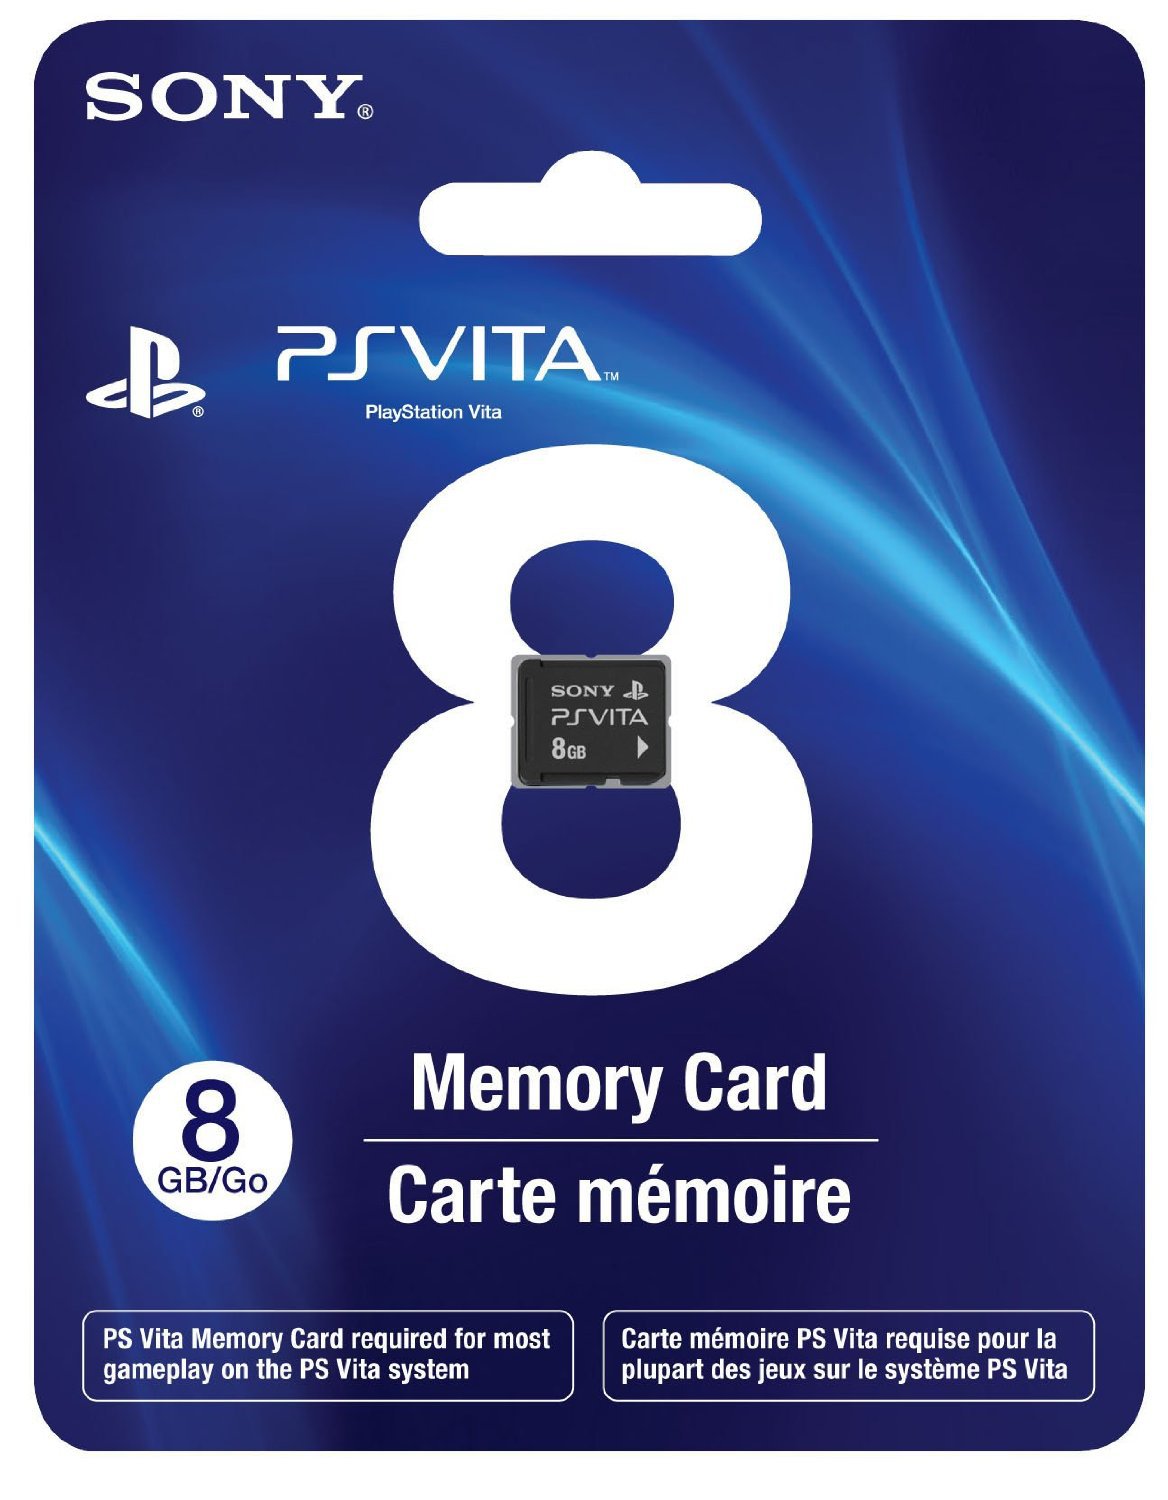 8 GB PS Vita Memory Card